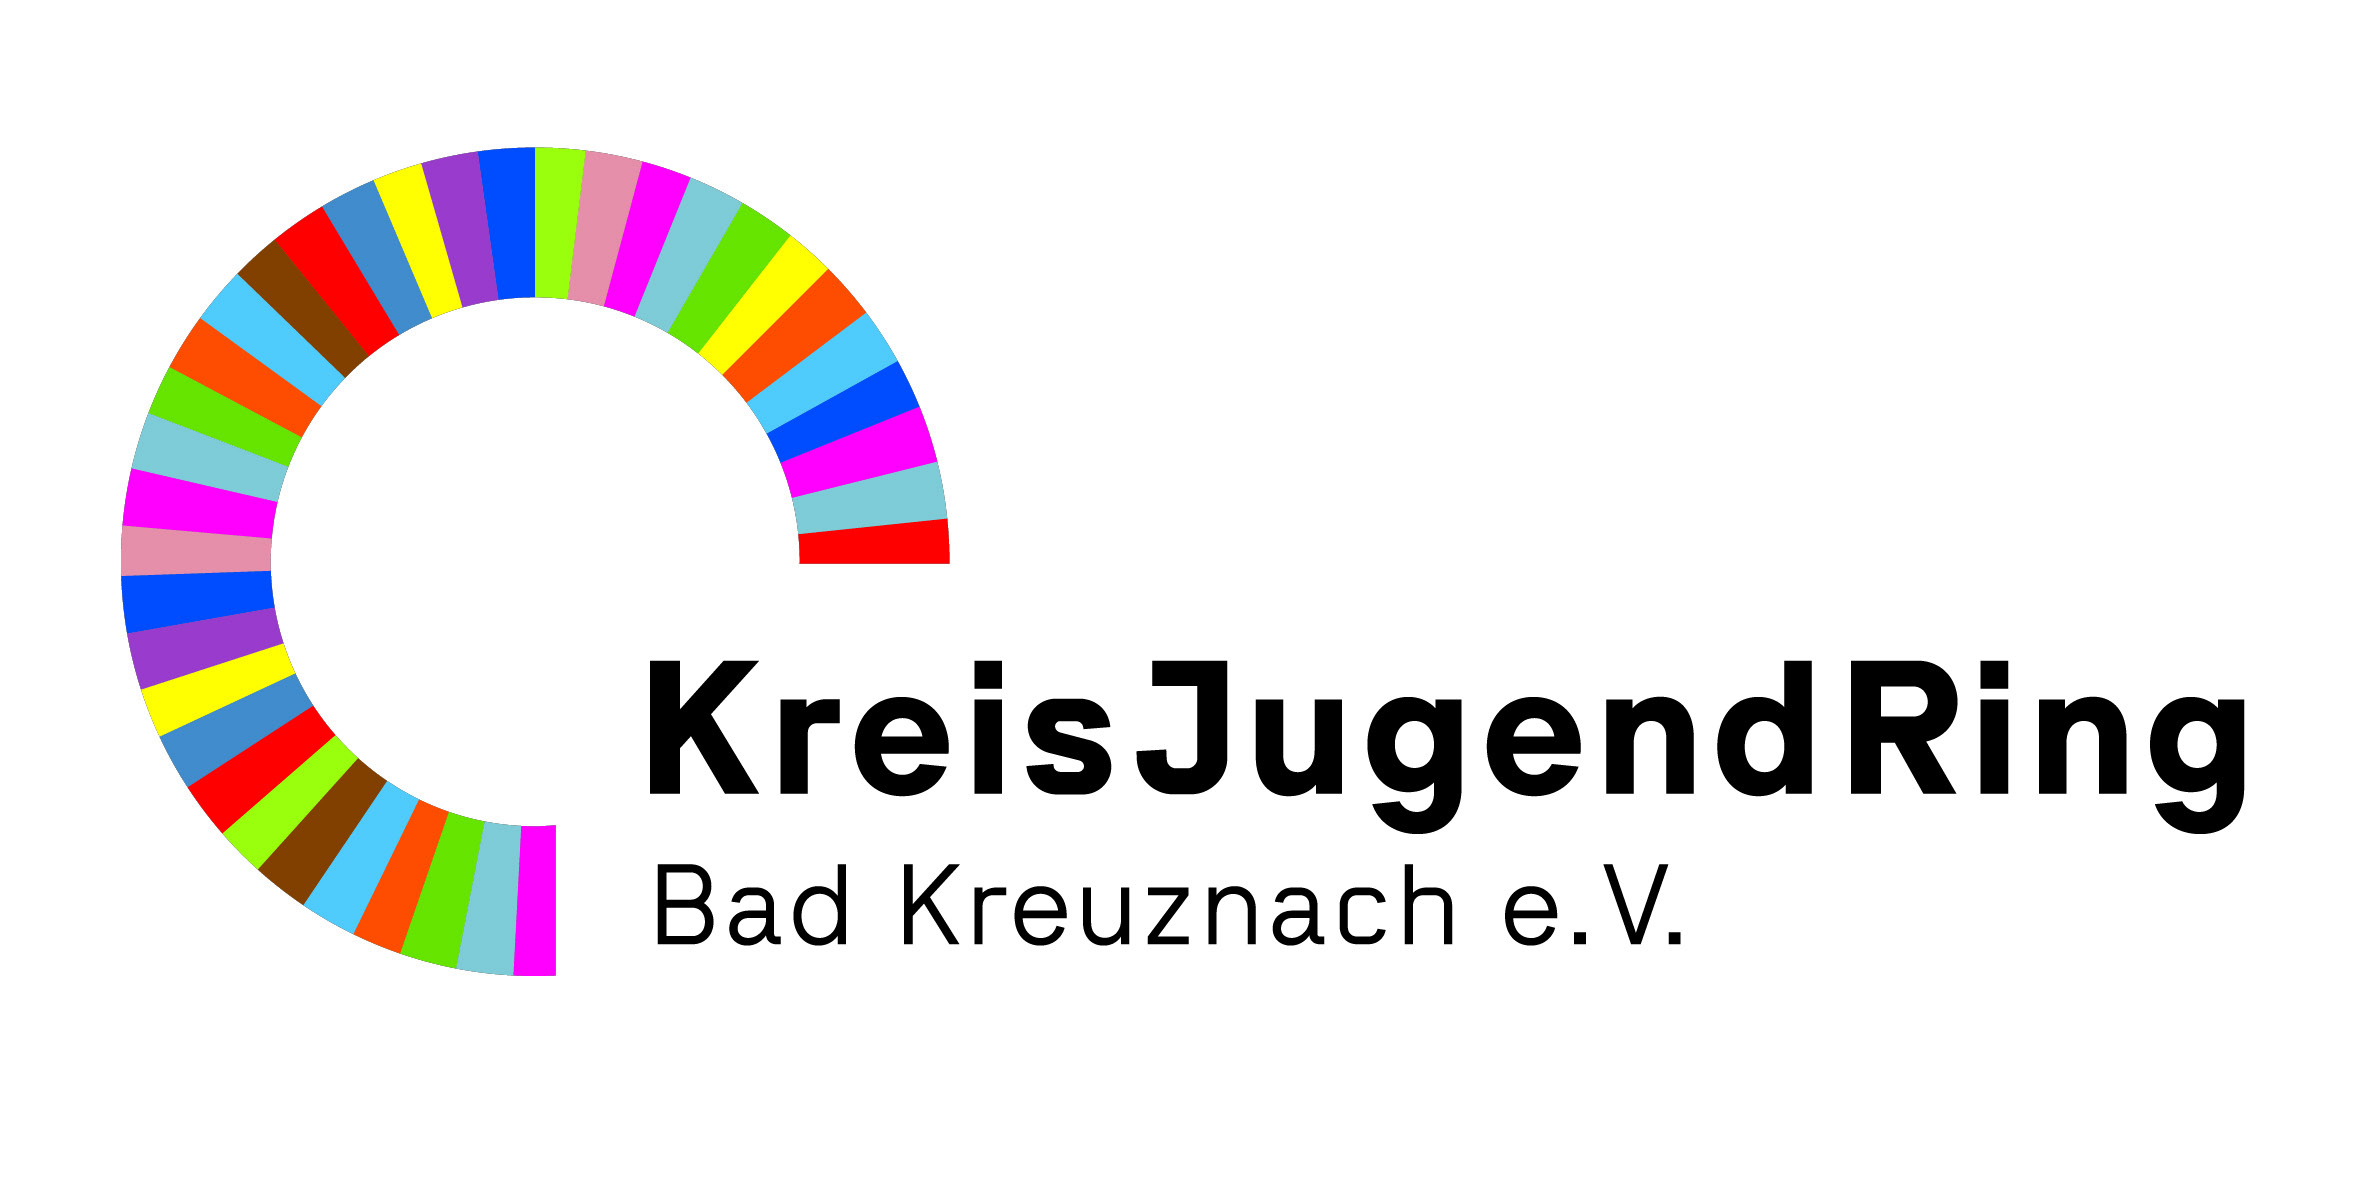 Kreisjugendring Bad Kreuznach e.V.